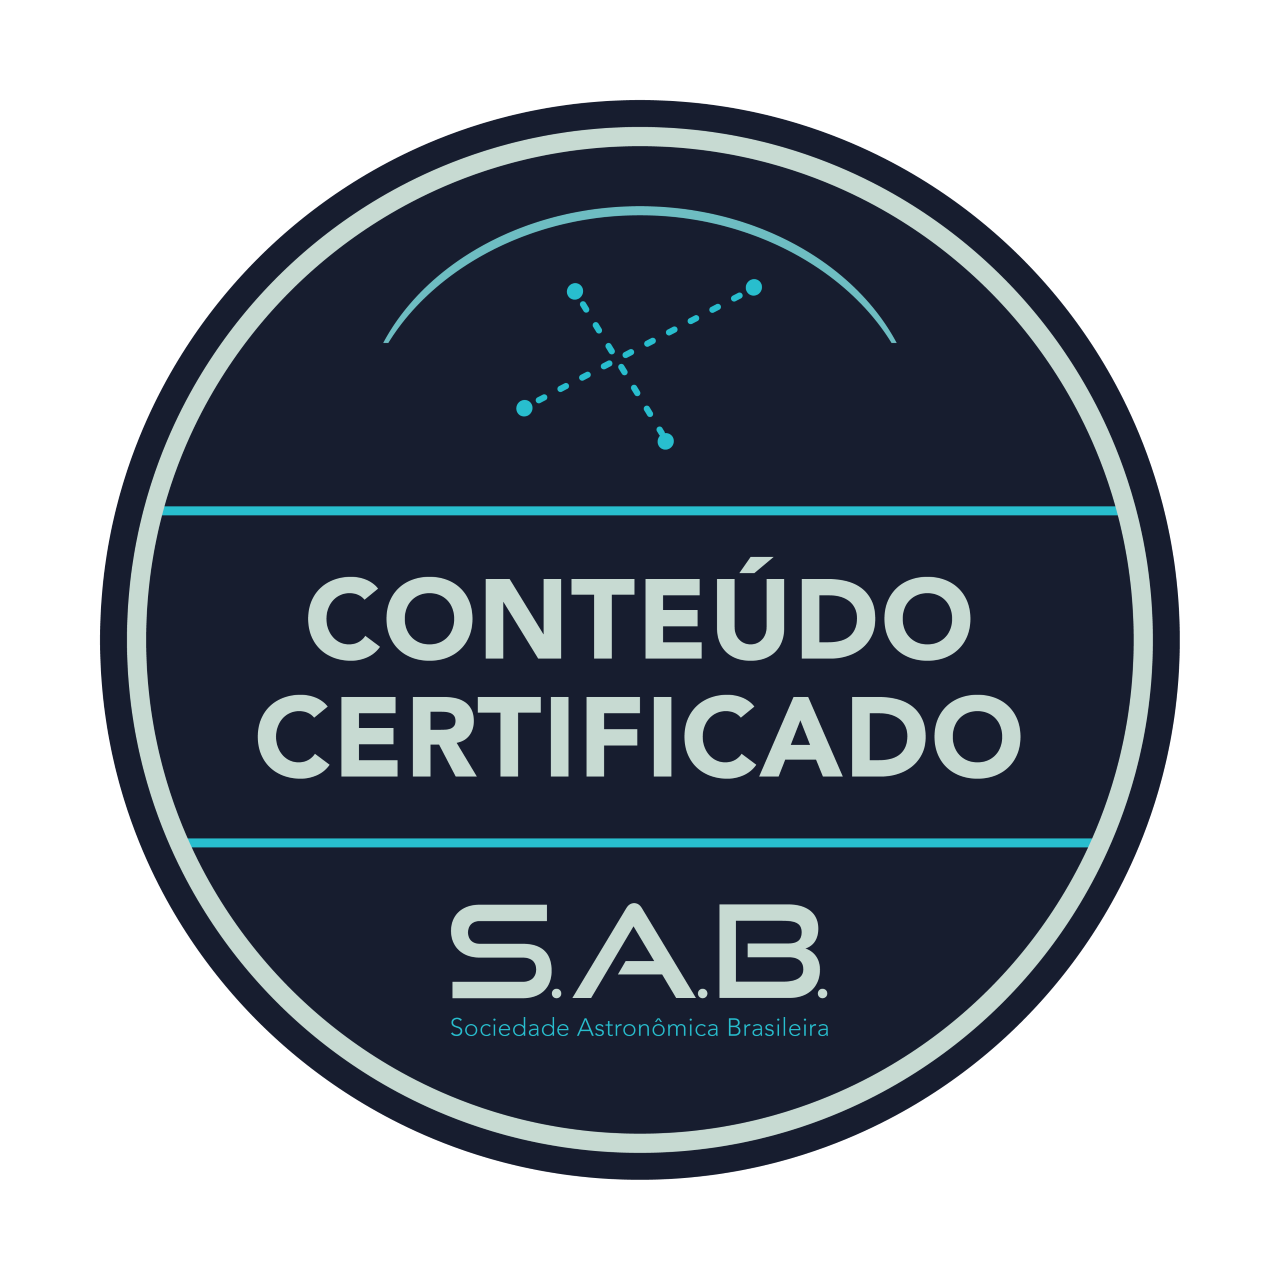 Selo de qualidade da Sociedade Astronômica Brasileira